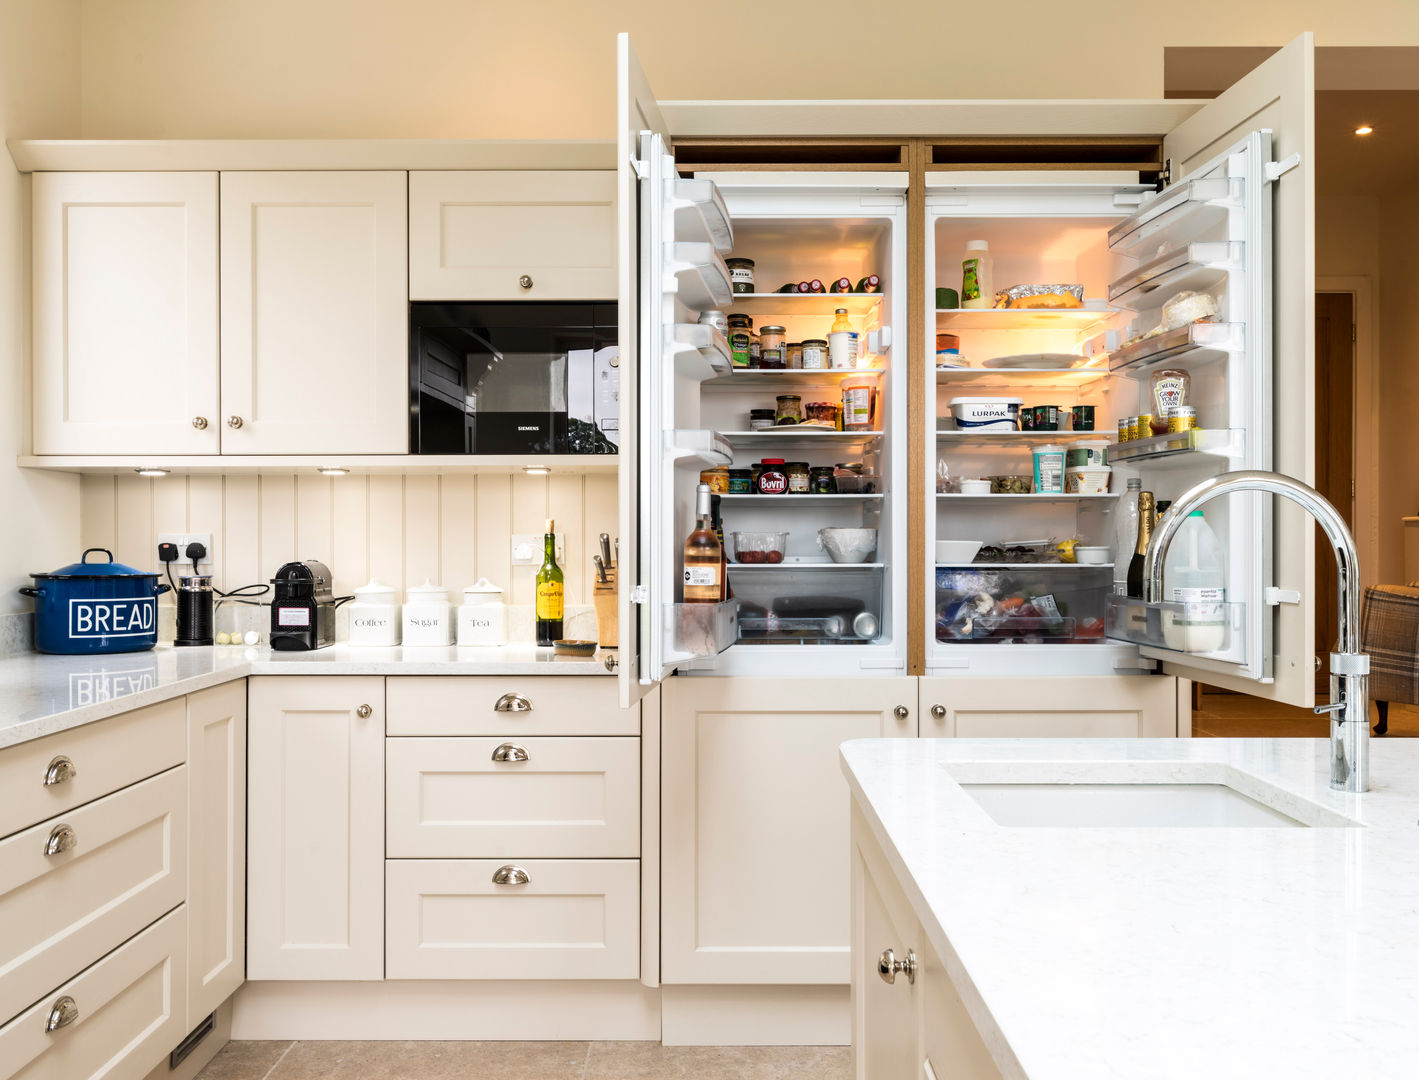 Integrated fridges John Gauld Photography Inbouwkeukens Fridge/freezers,Shaker style,Kitchen island